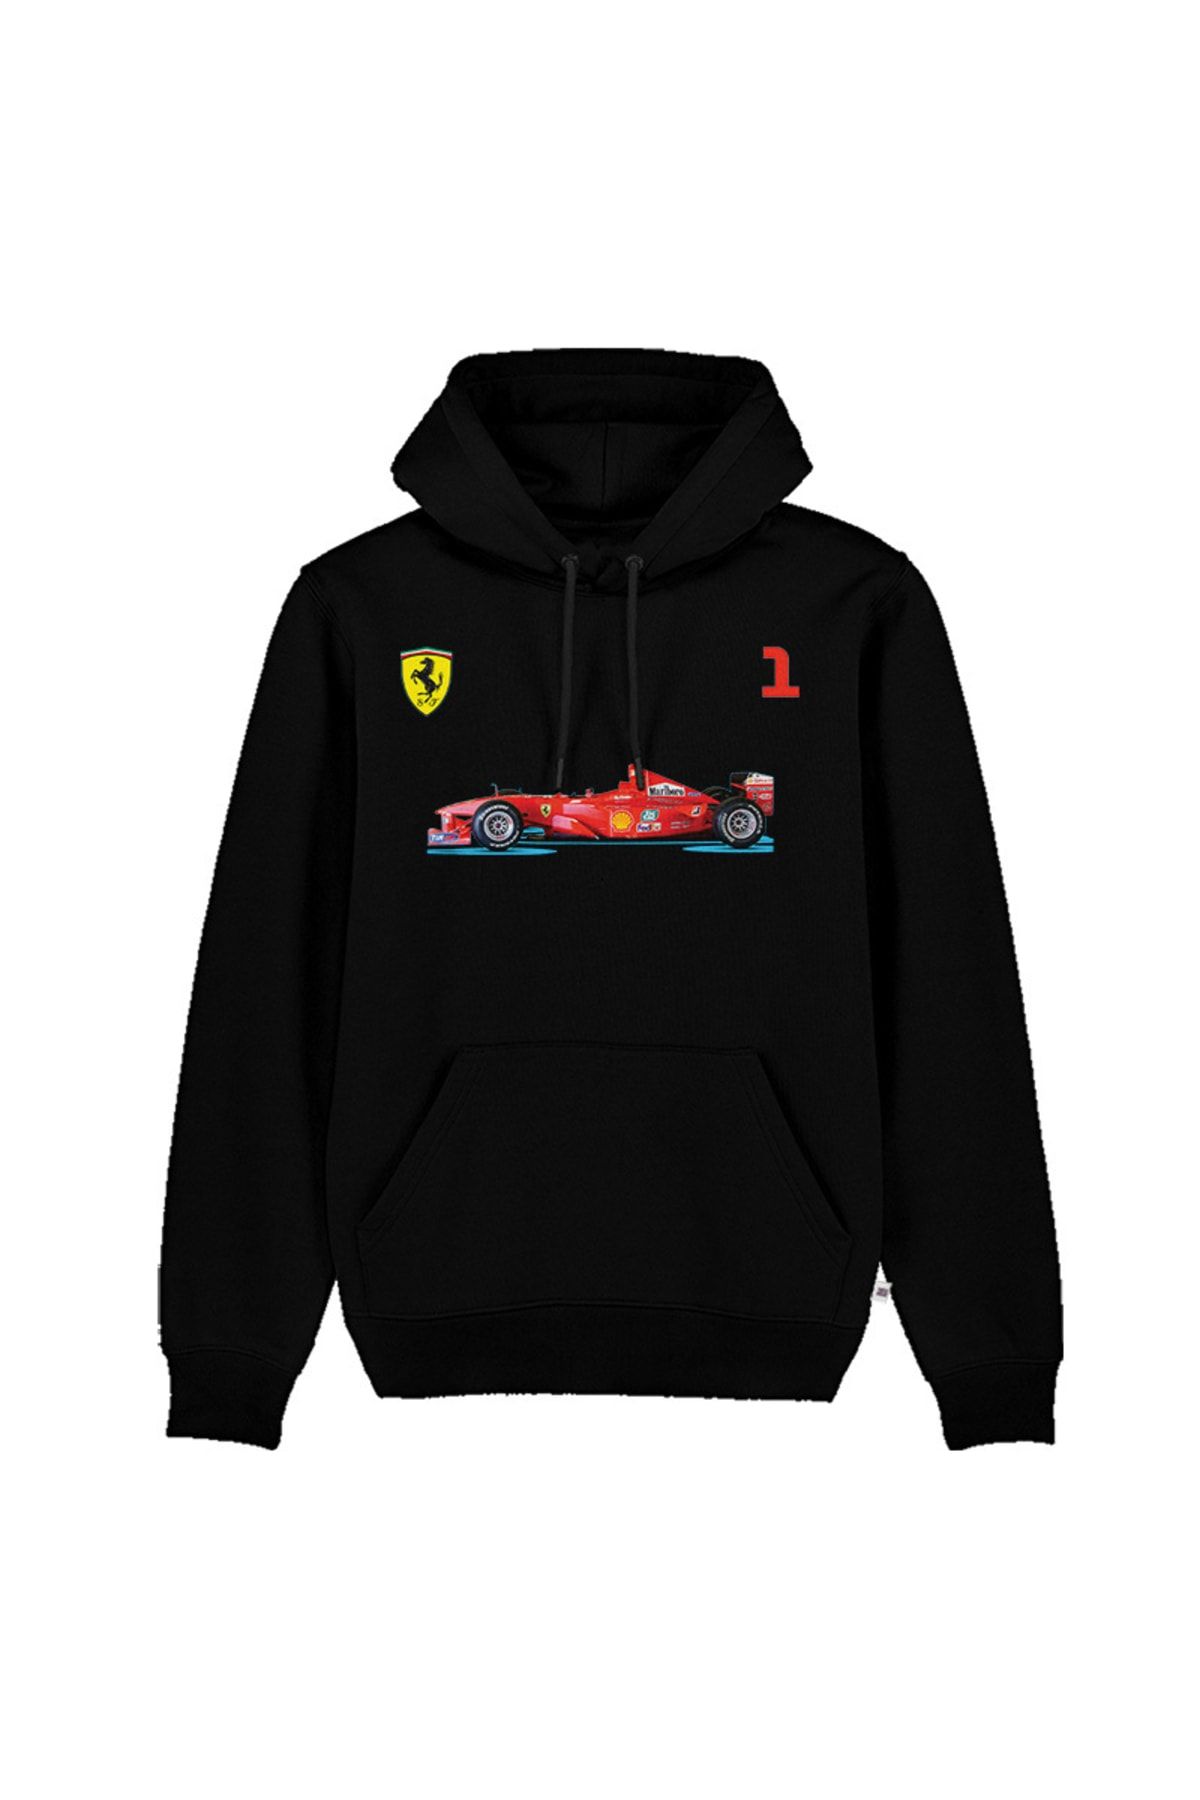 Sekiz Numara Michael Schumacher Scuderia Ferrari Formula 1 Takım Sweatshirt